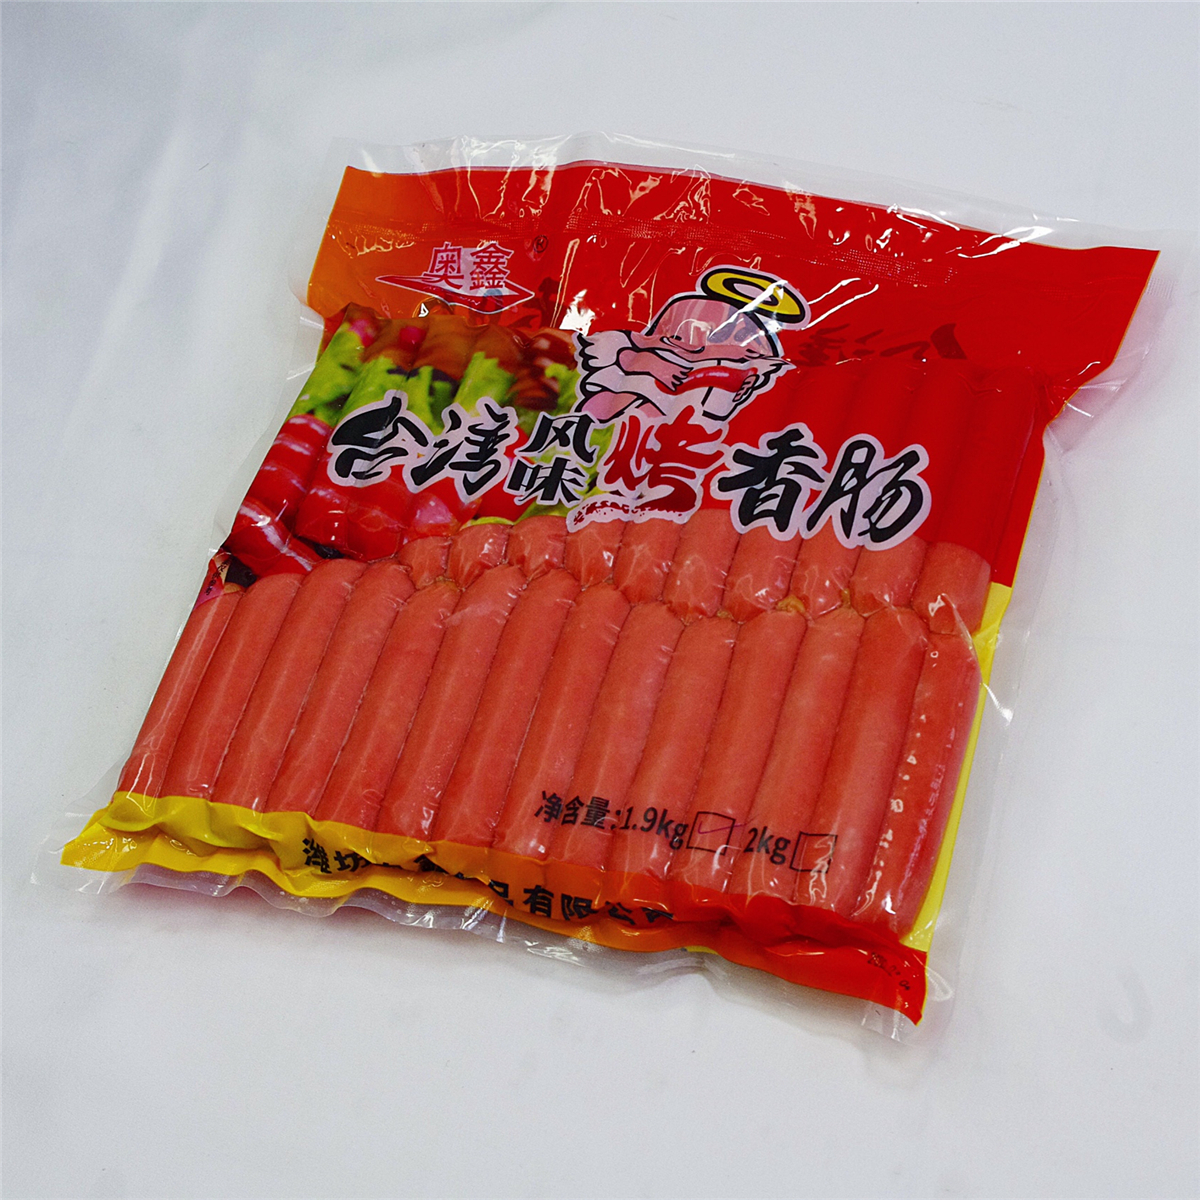 18、台湾风味烤香肠1.9.jpg